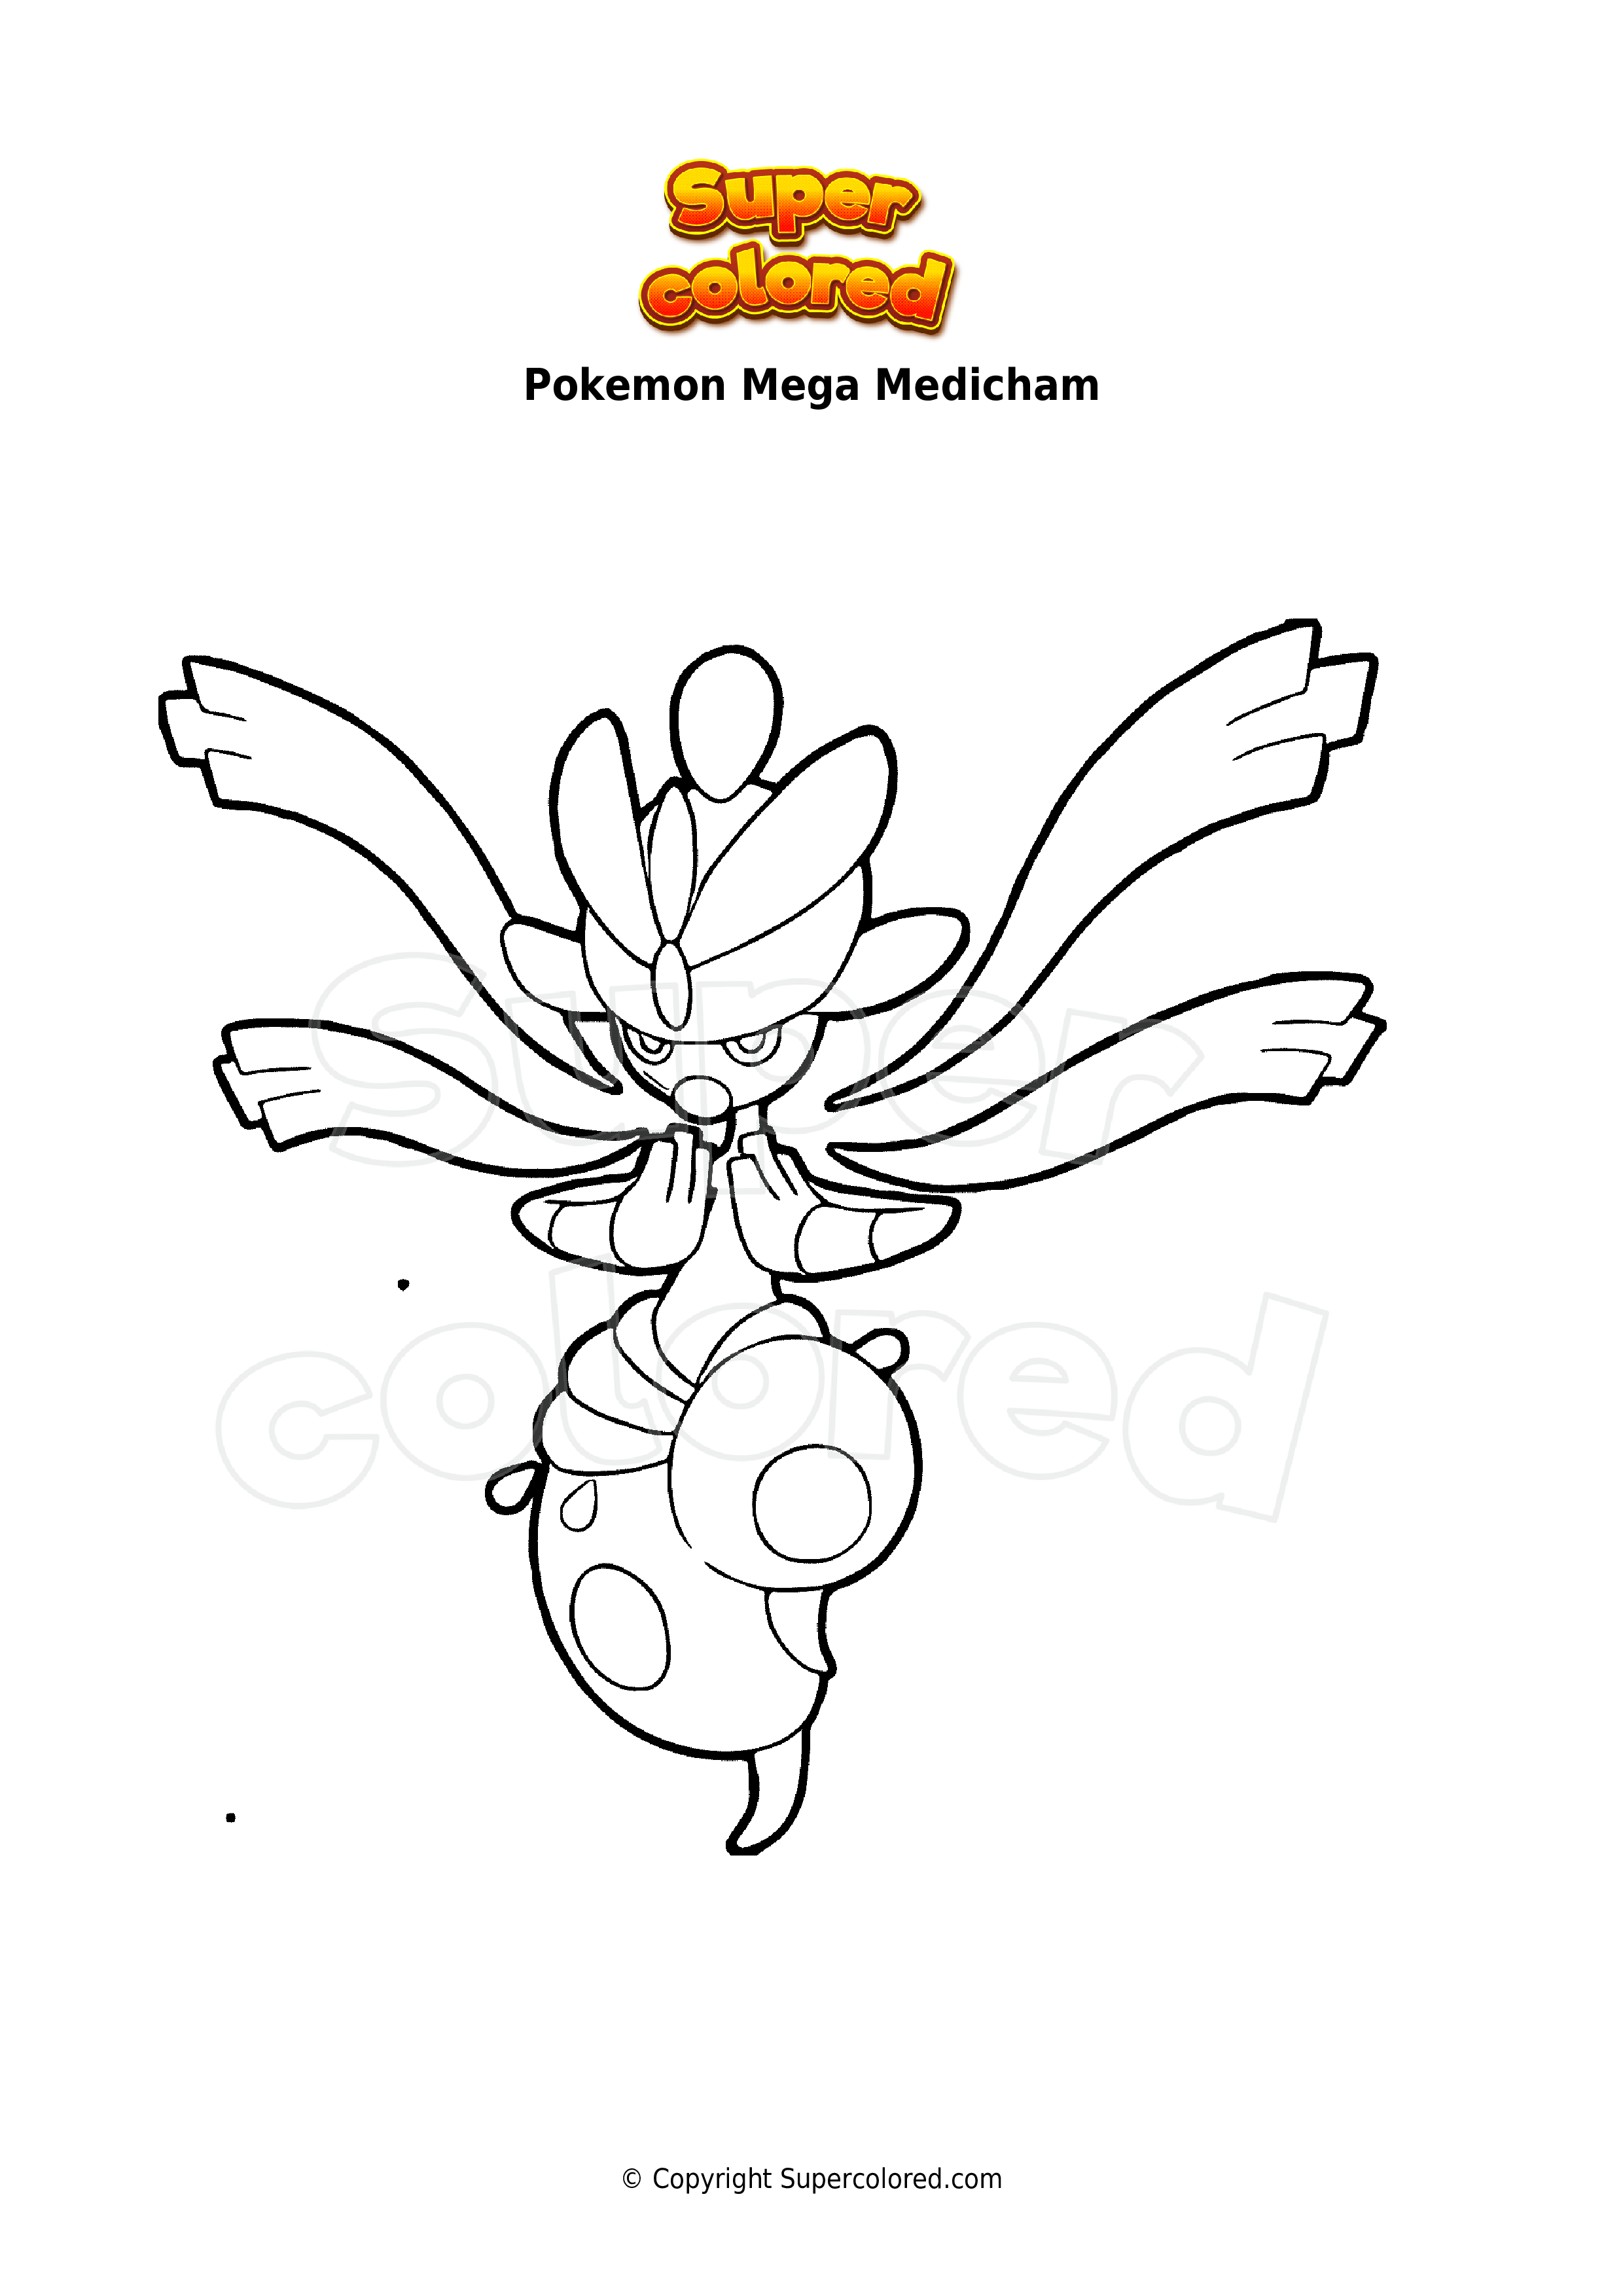 Coloring page Pokemon Mega Medicham - Supercolored.com